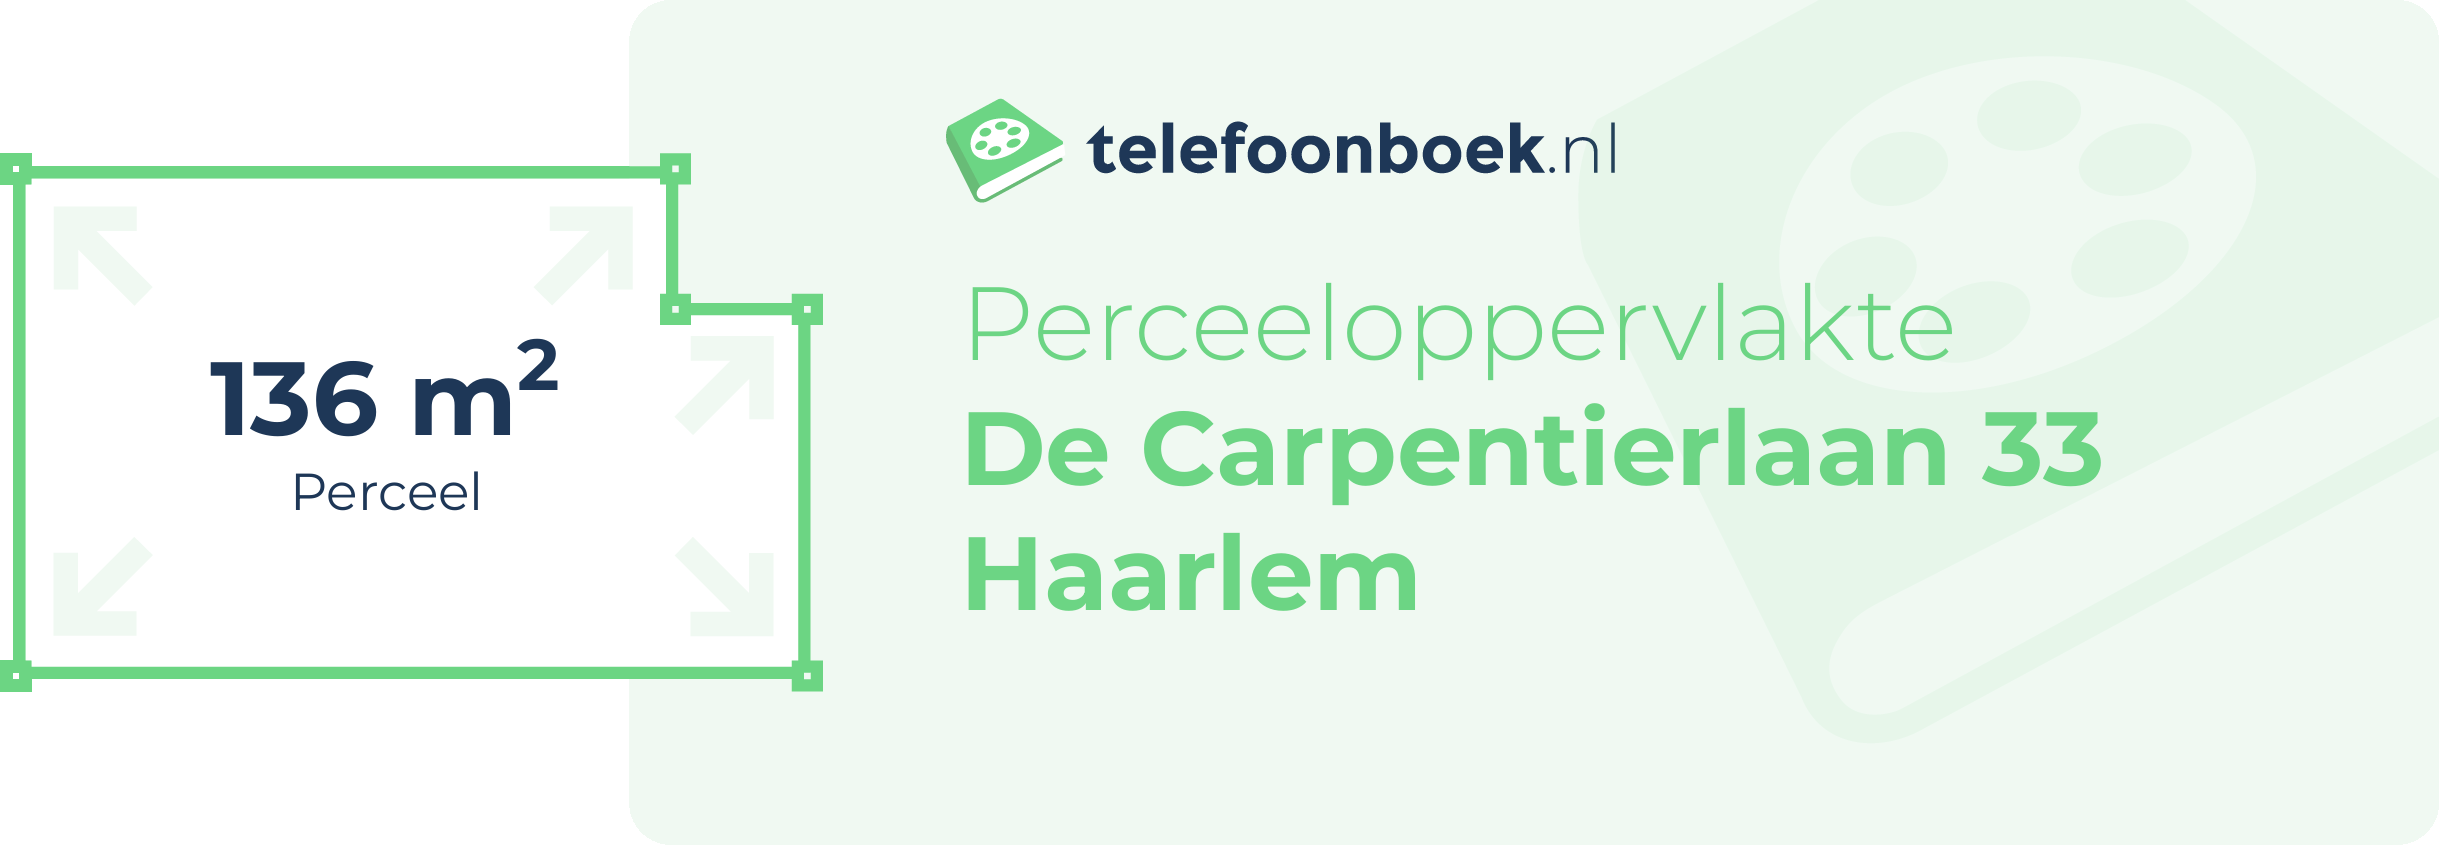 Perceeloppervlakte De Carpentierlaan 33 Haarlem